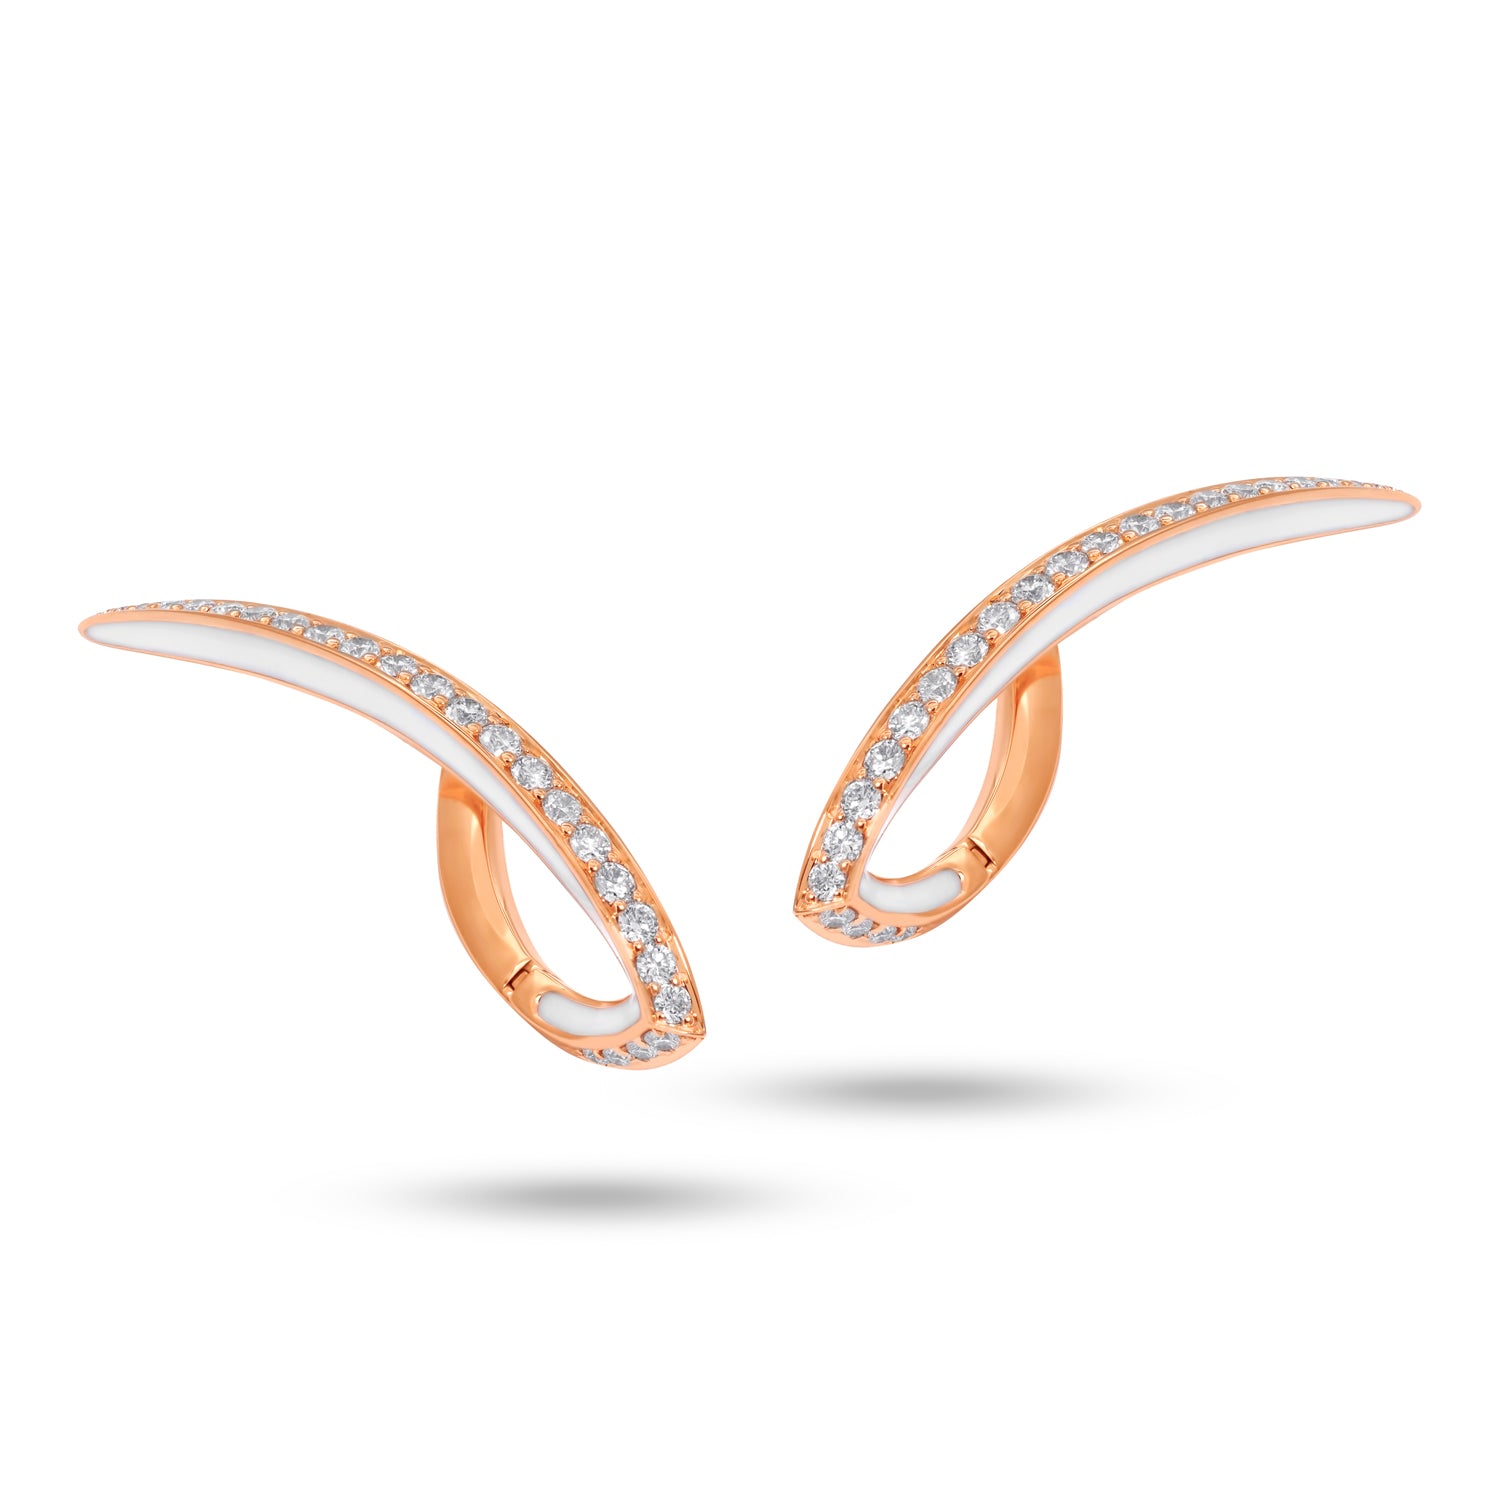 VIVA filigree Earrings with Diamonds and White Enamel